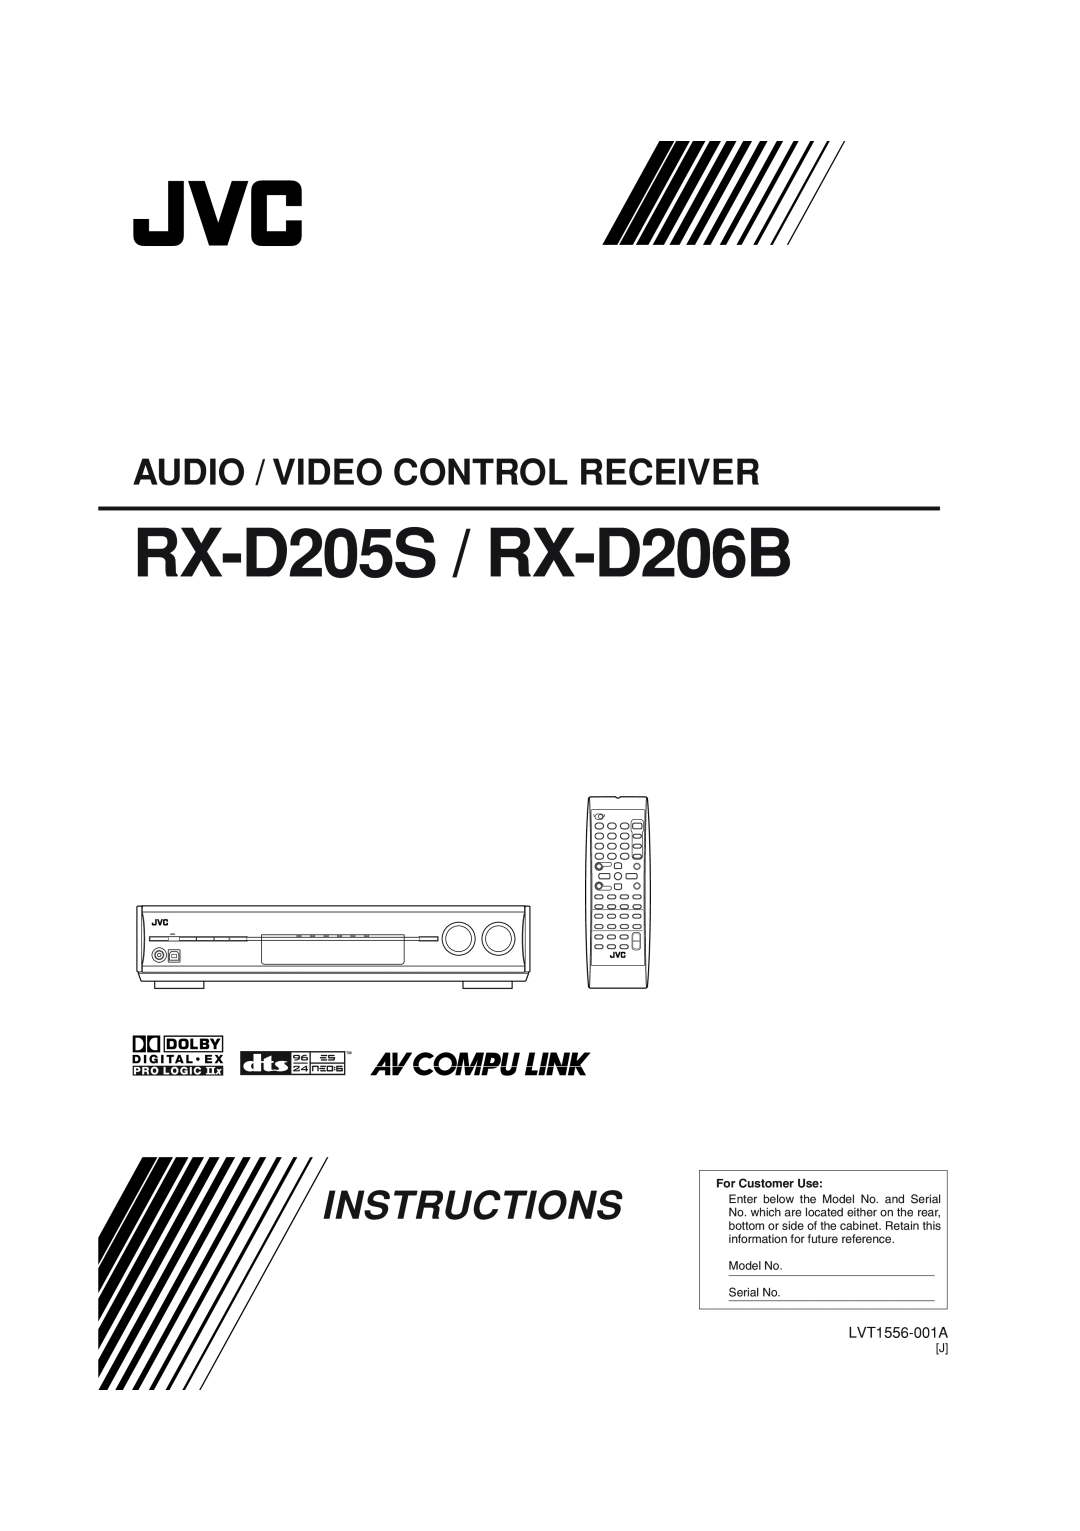 JVC manual RX-D205S / RX-D206B, Instructions, Audio / Video Control Receiver 